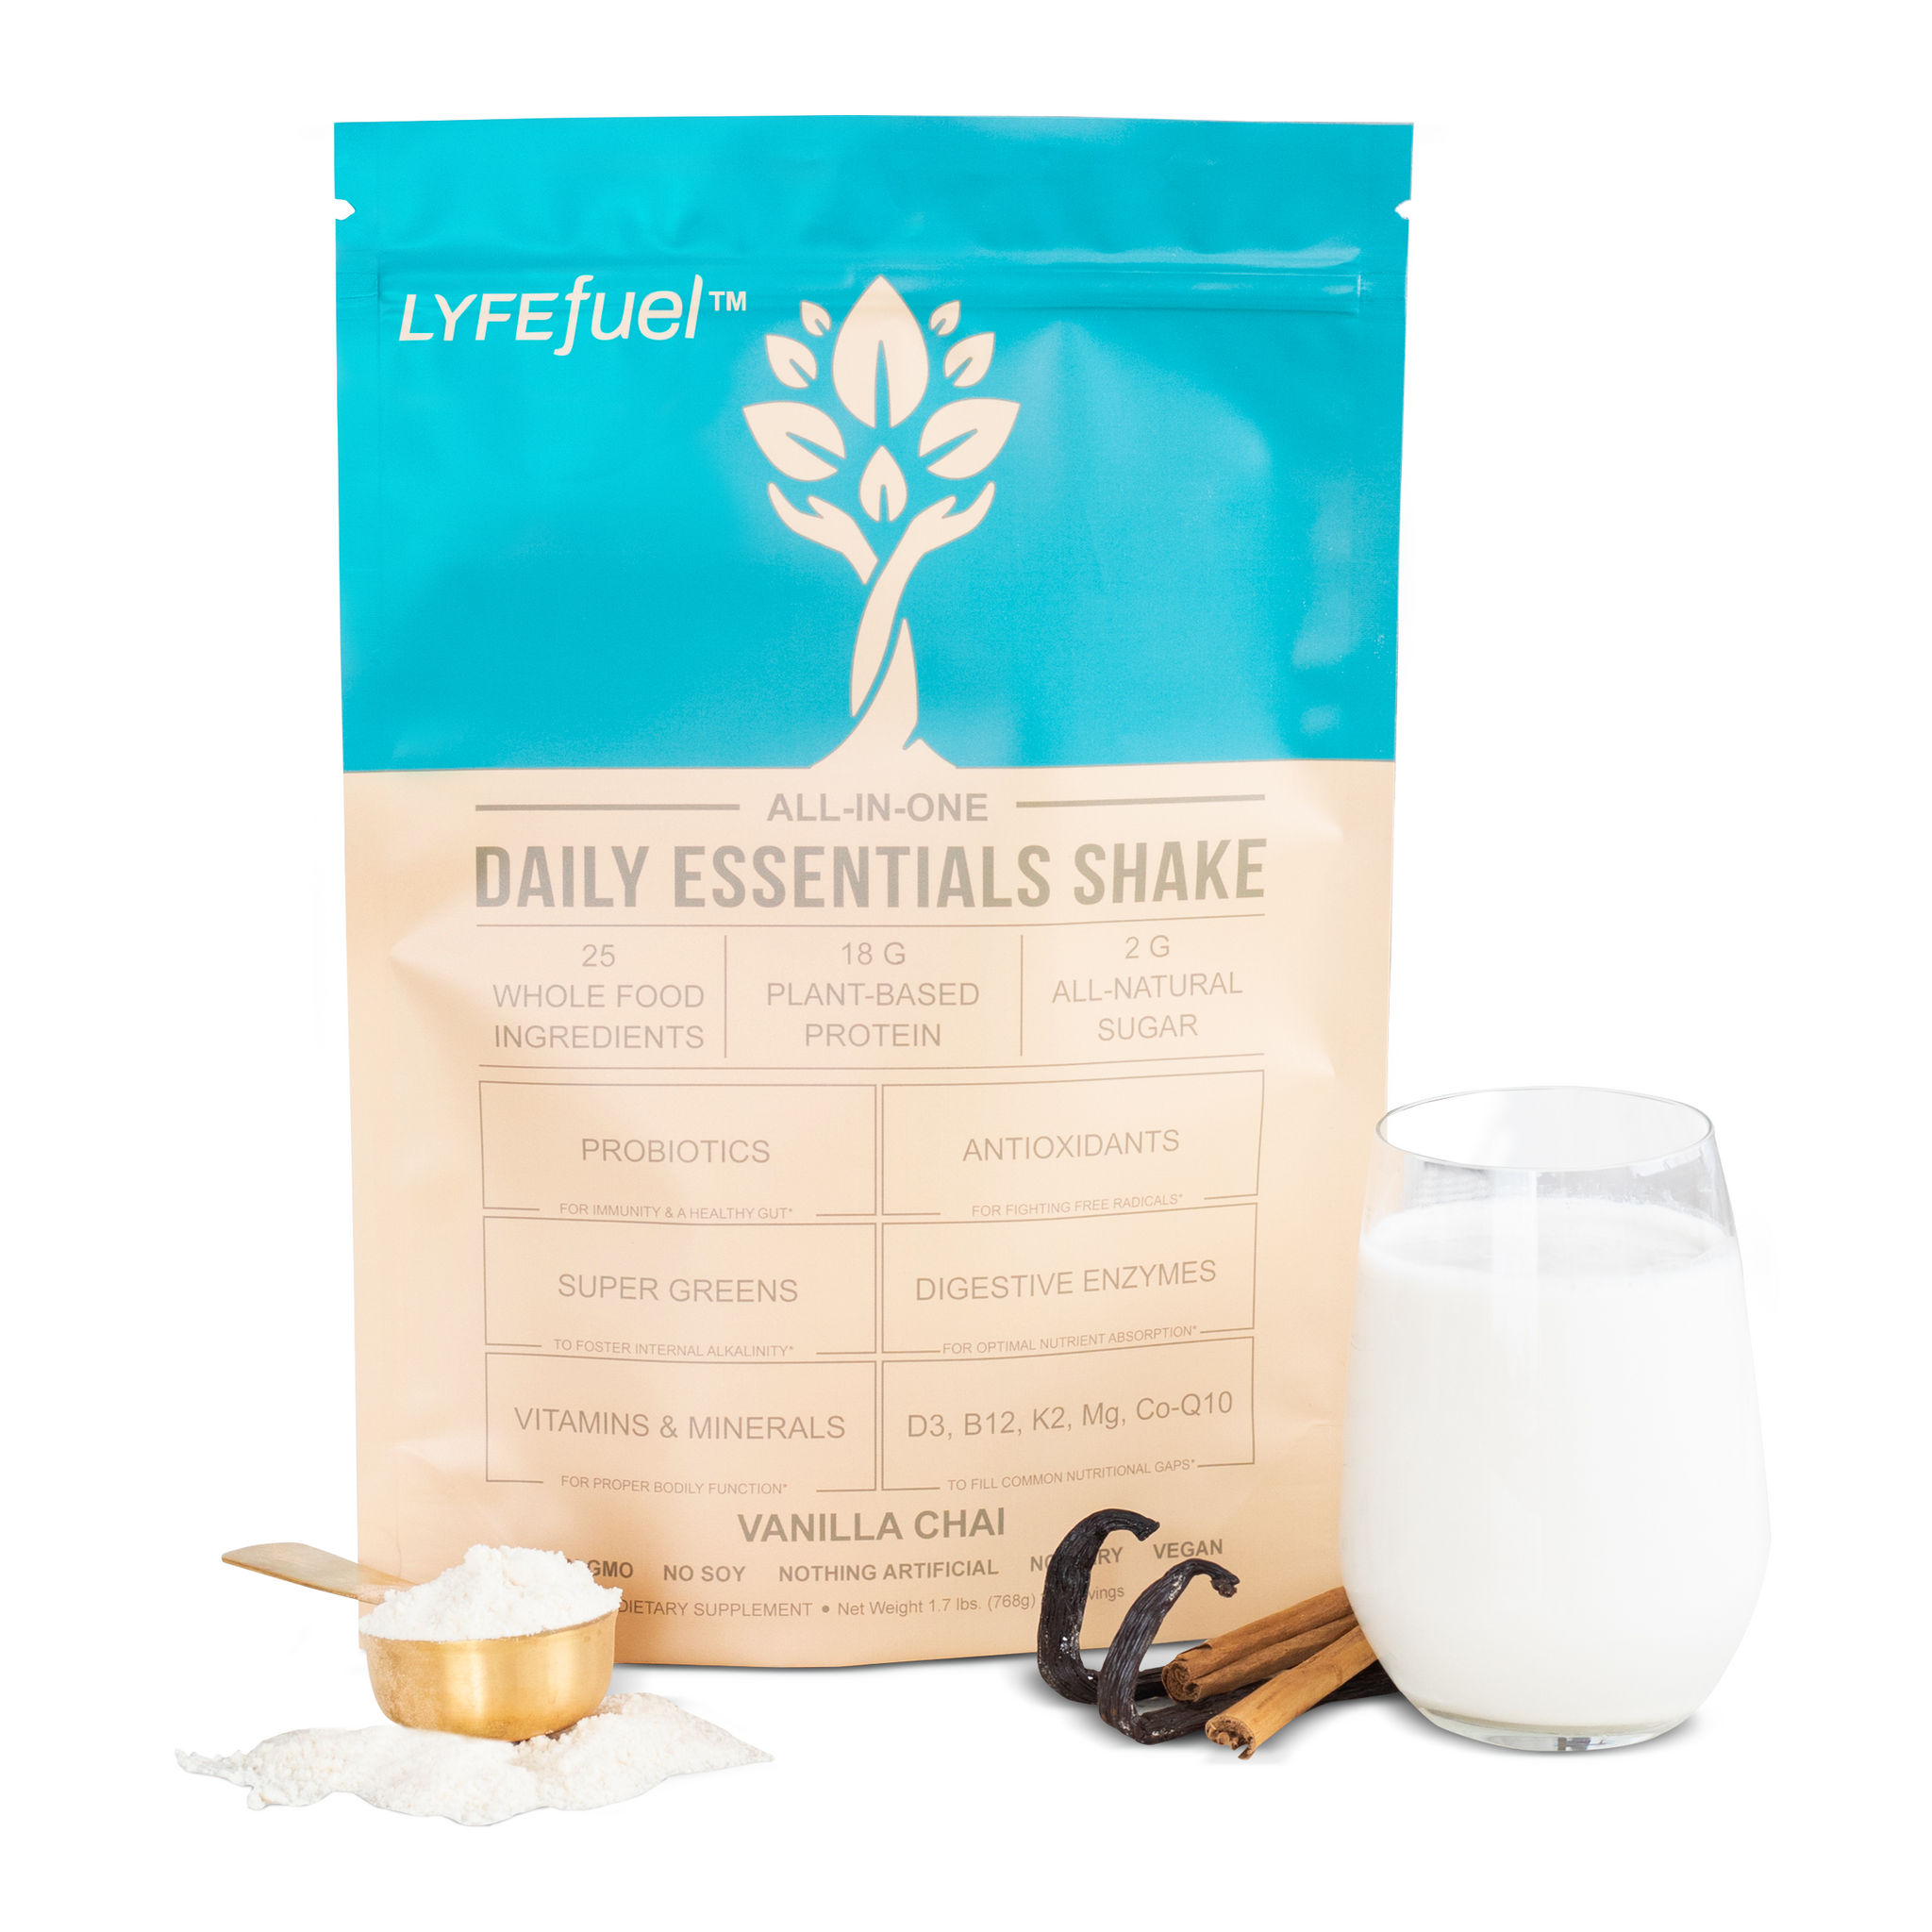 Essentials Nutrition Shake by LyfeFuel